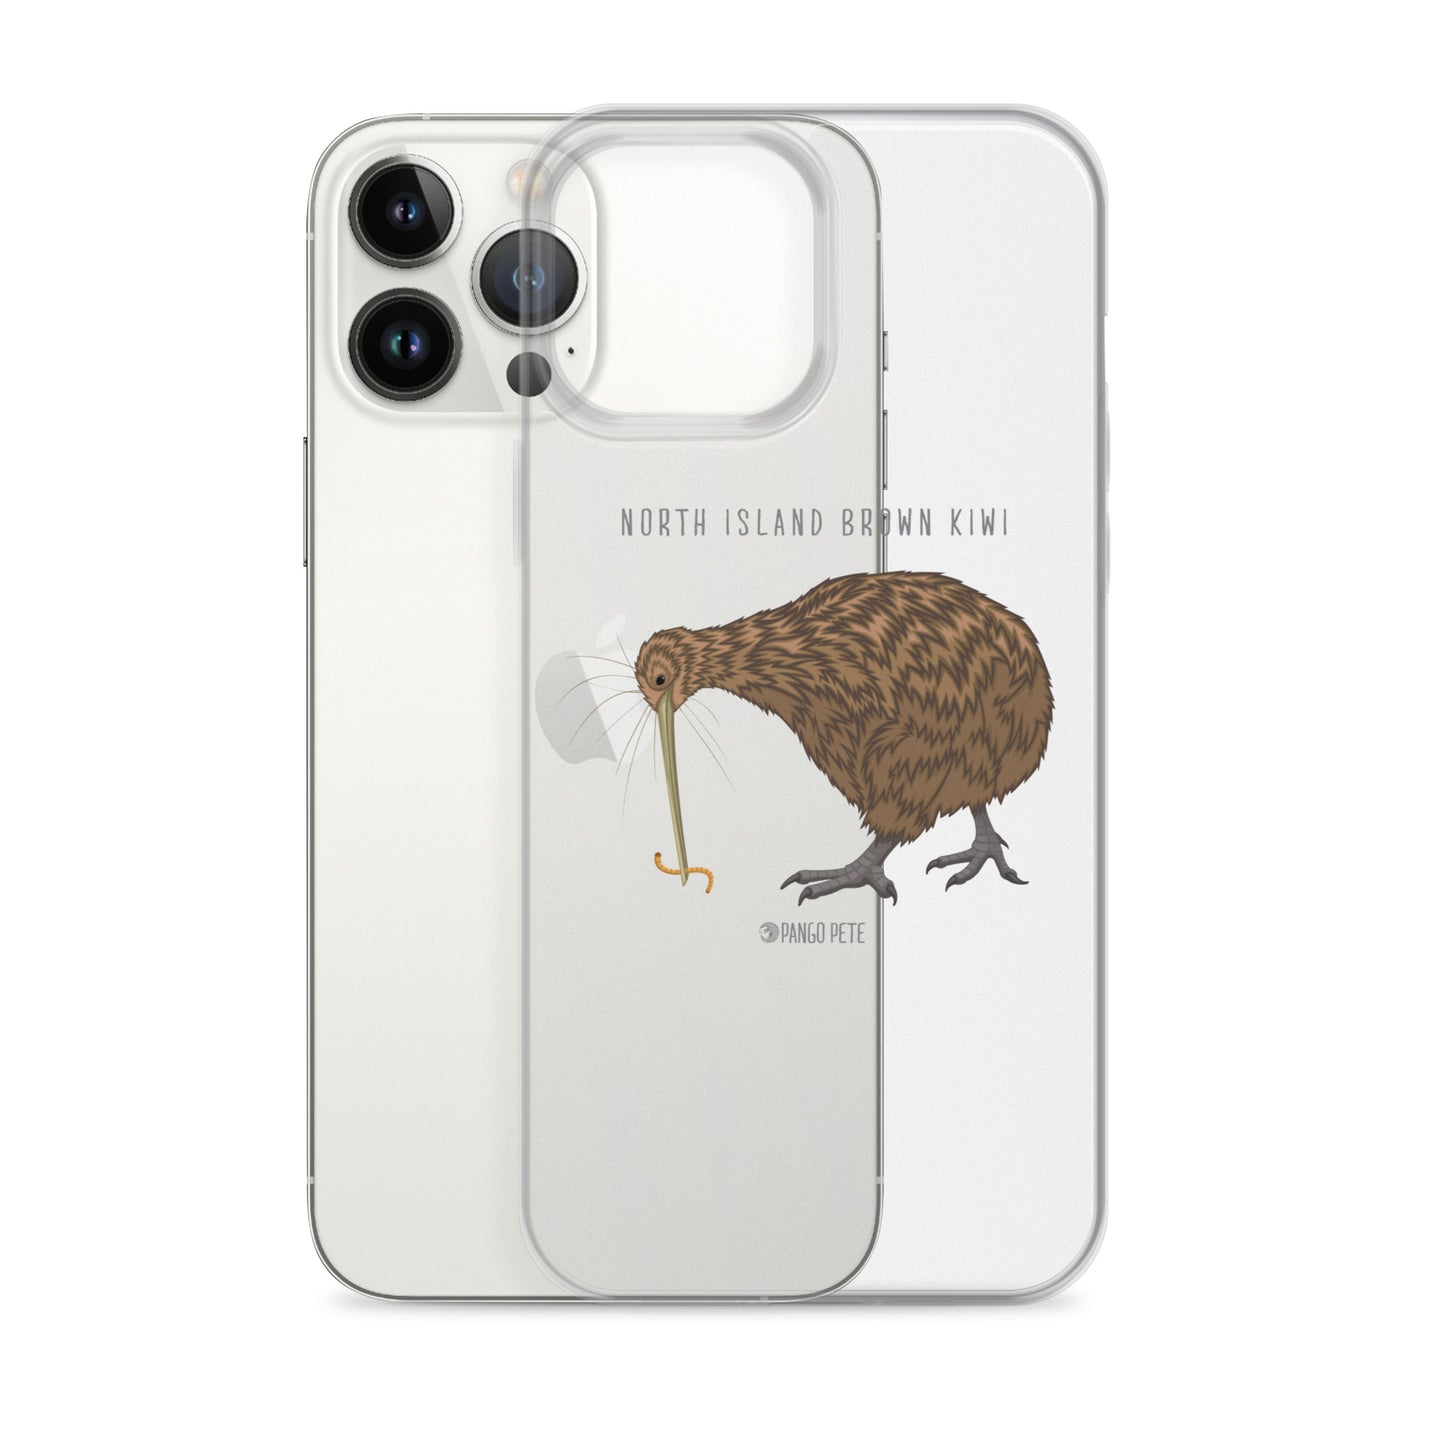 Kiwi iPhone Case